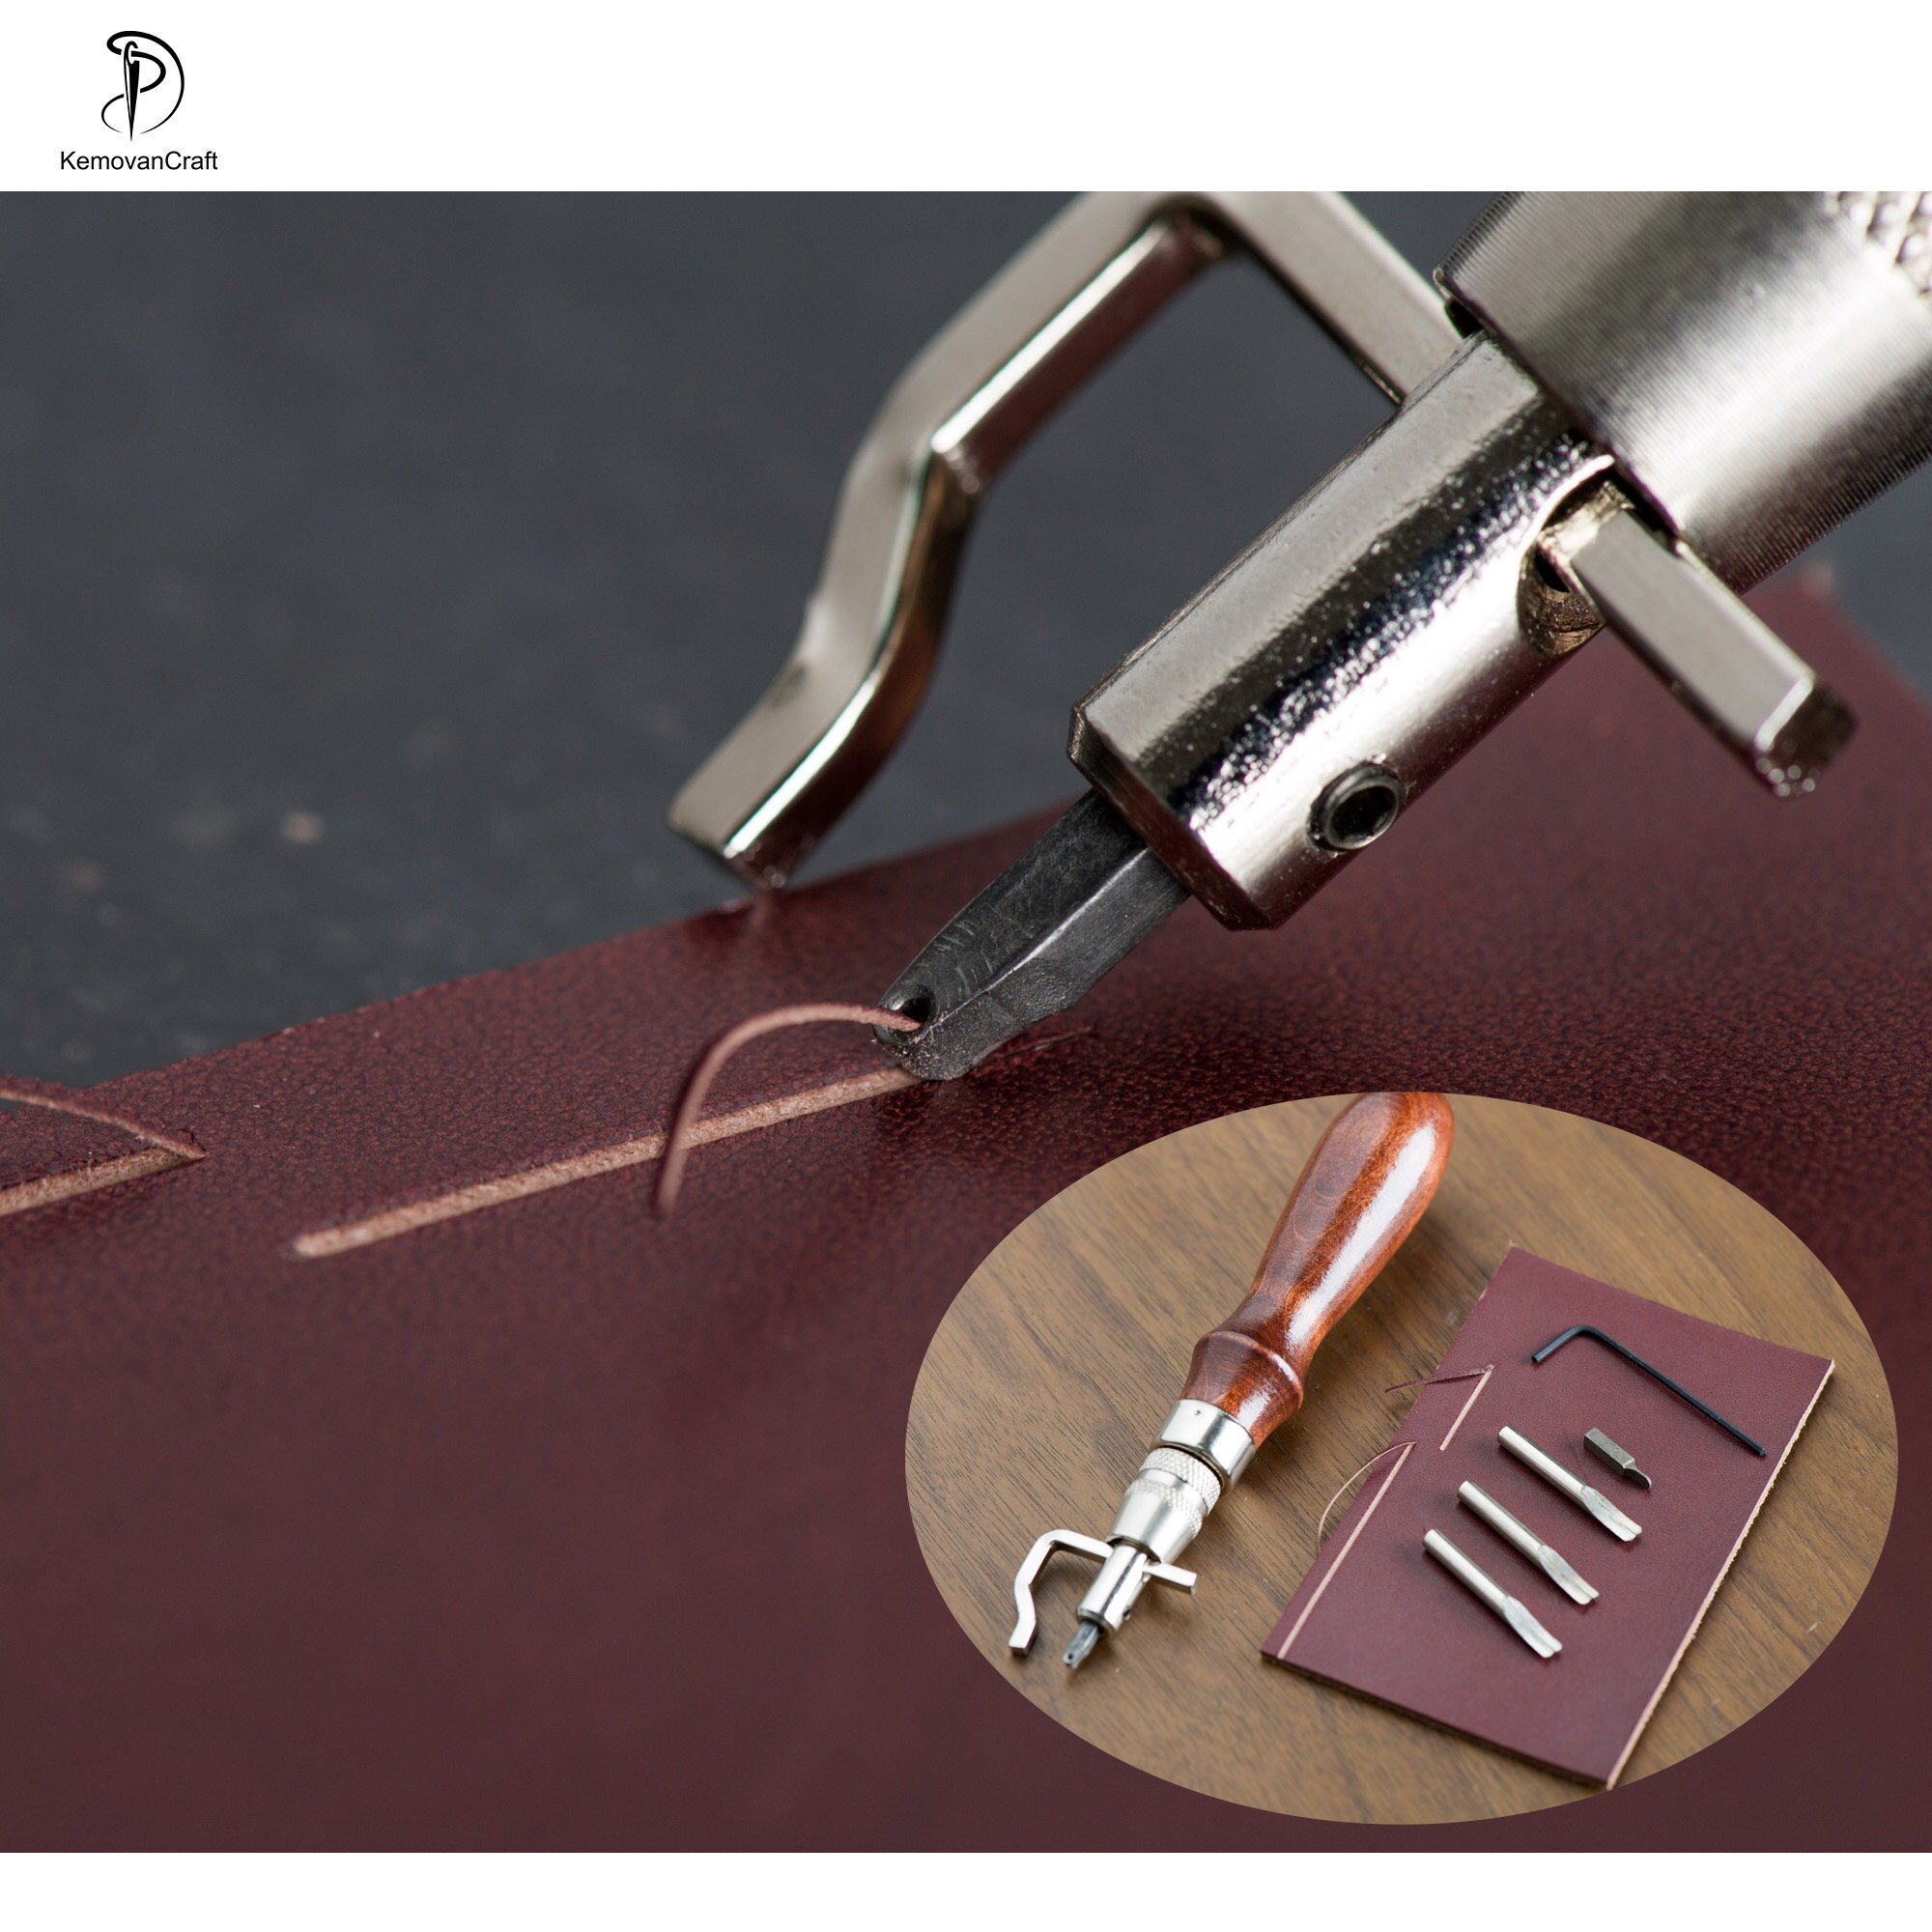 BUSSOLA in metallo bordo Creaser di misurazione in pelle Groover per fissare Leather Craft 